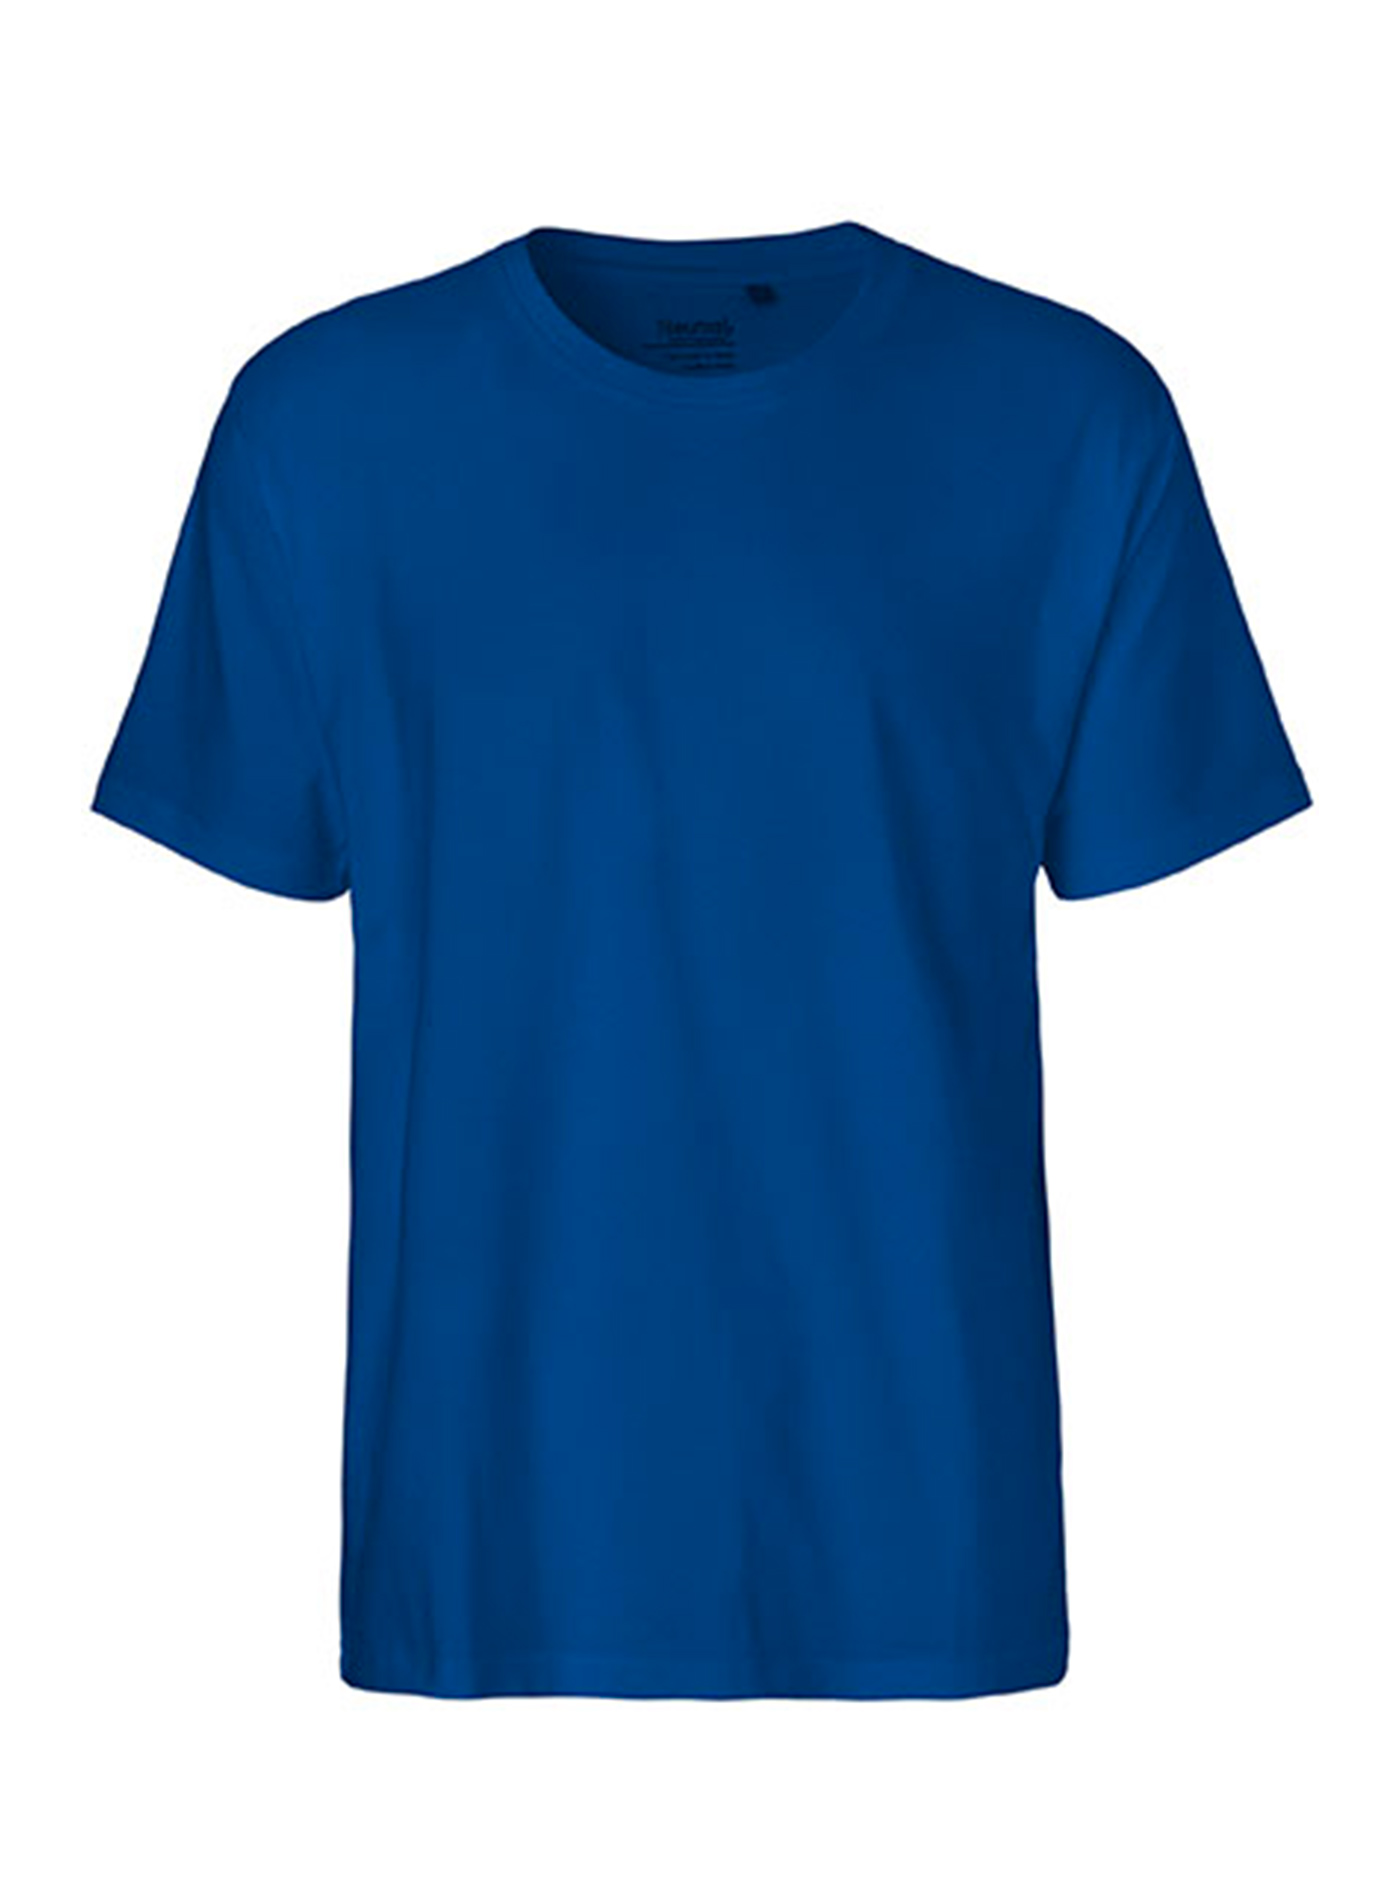 Pánské tričko Neutral Classic - Královská modrá M